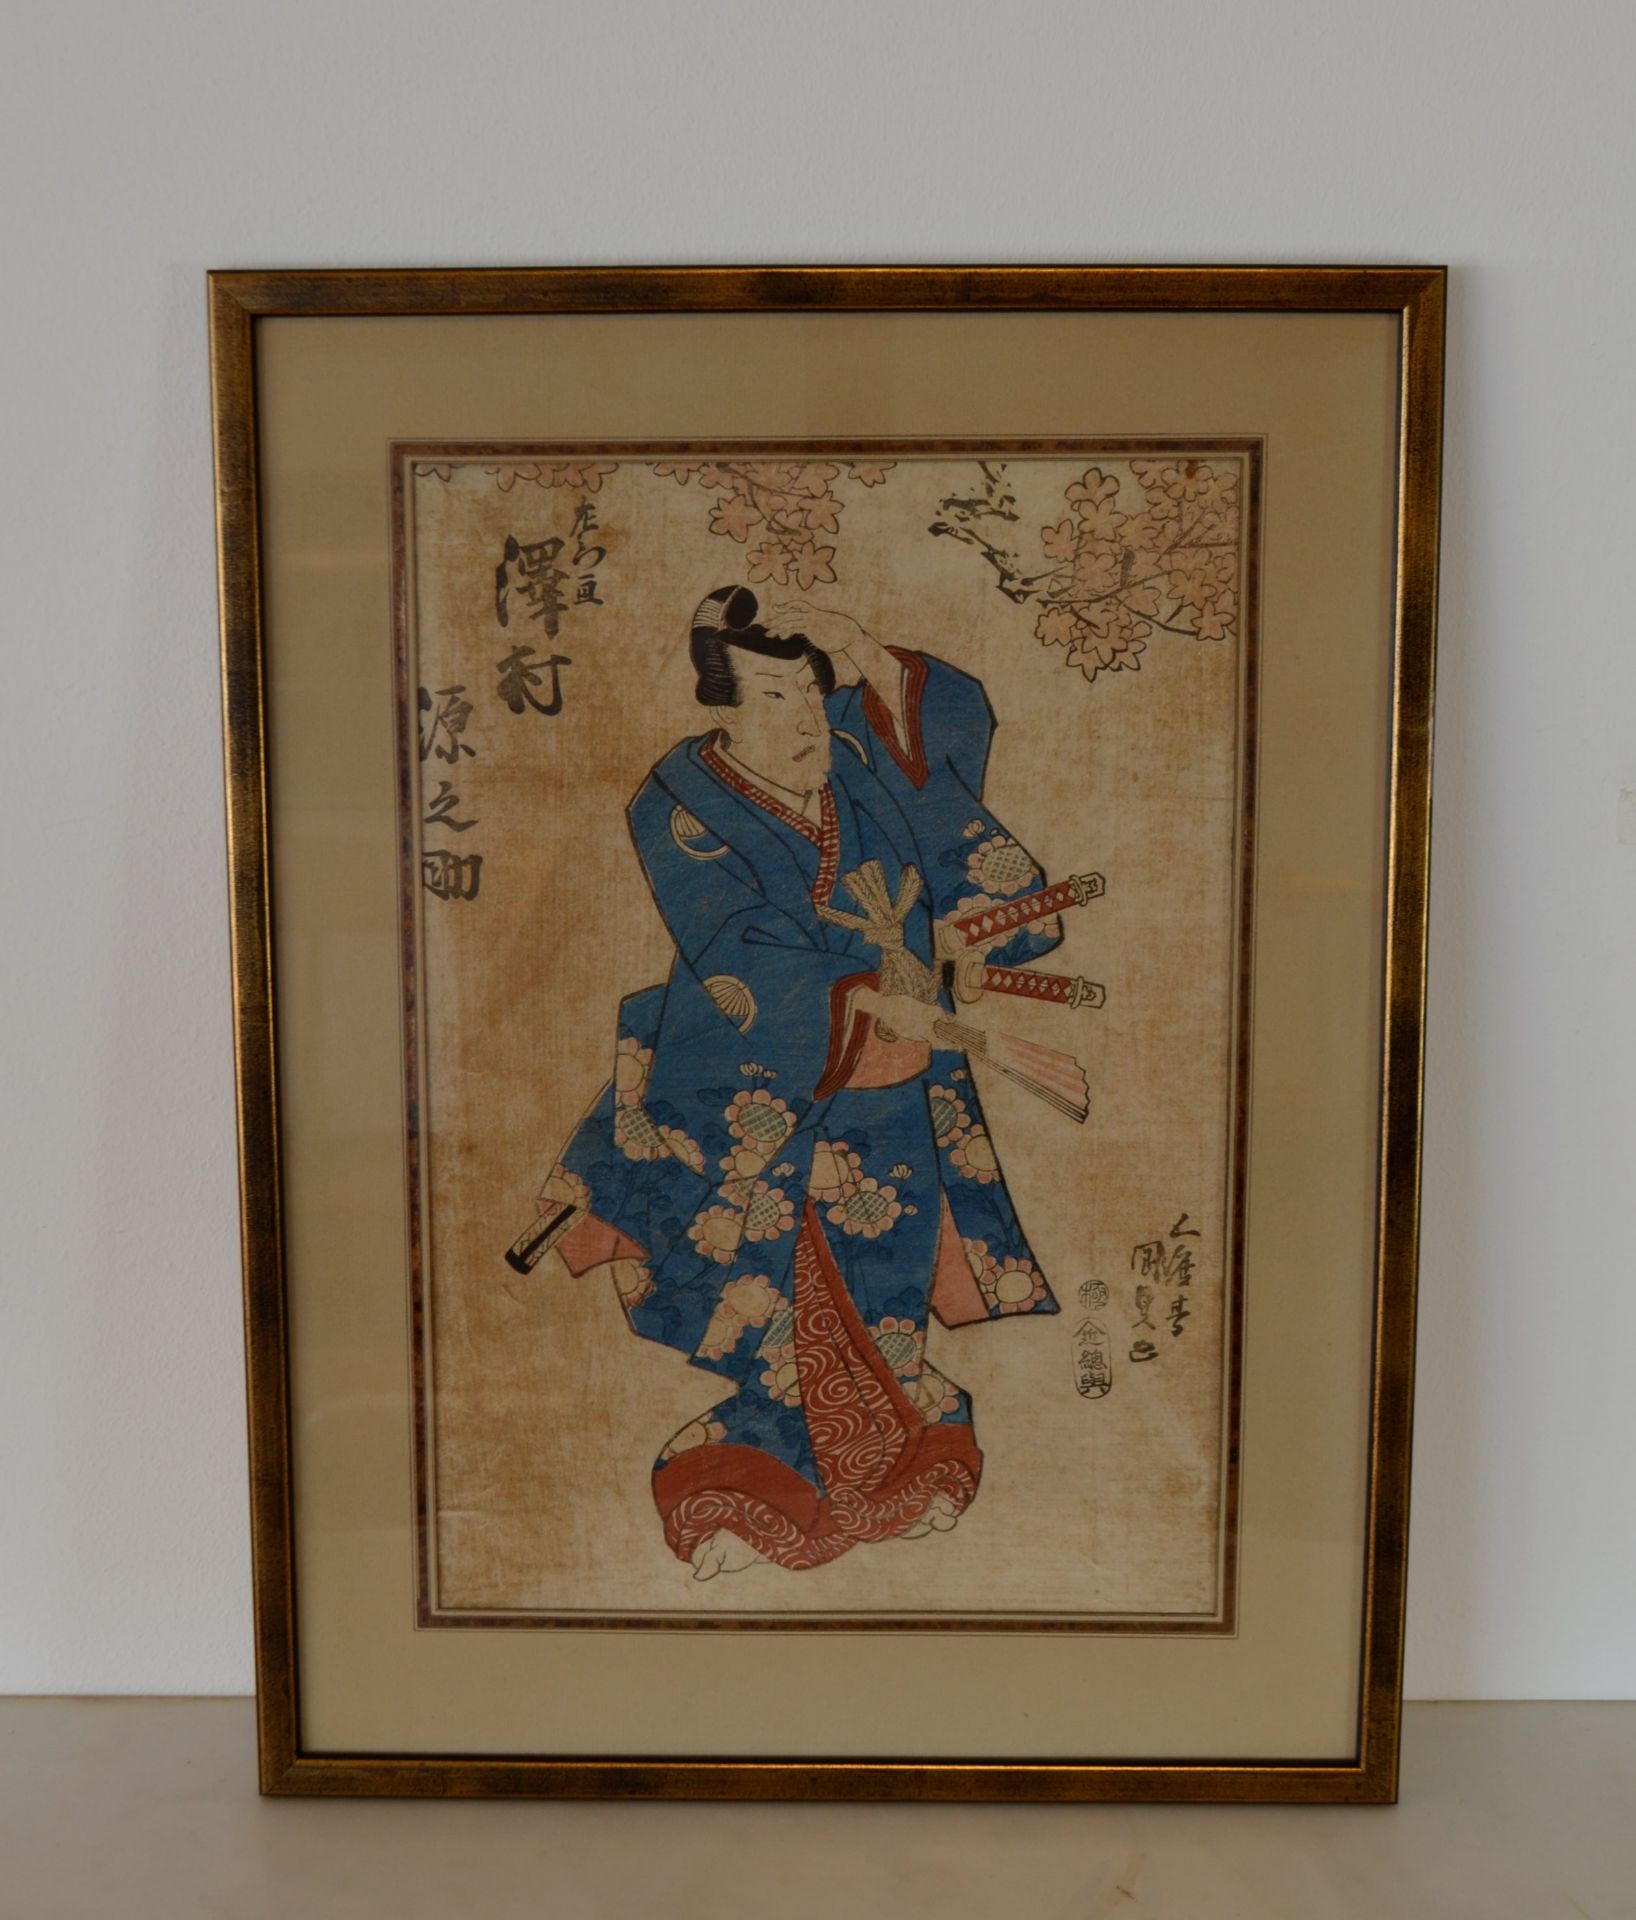 Estampe Japonaise d'un Samurai 19e siècle